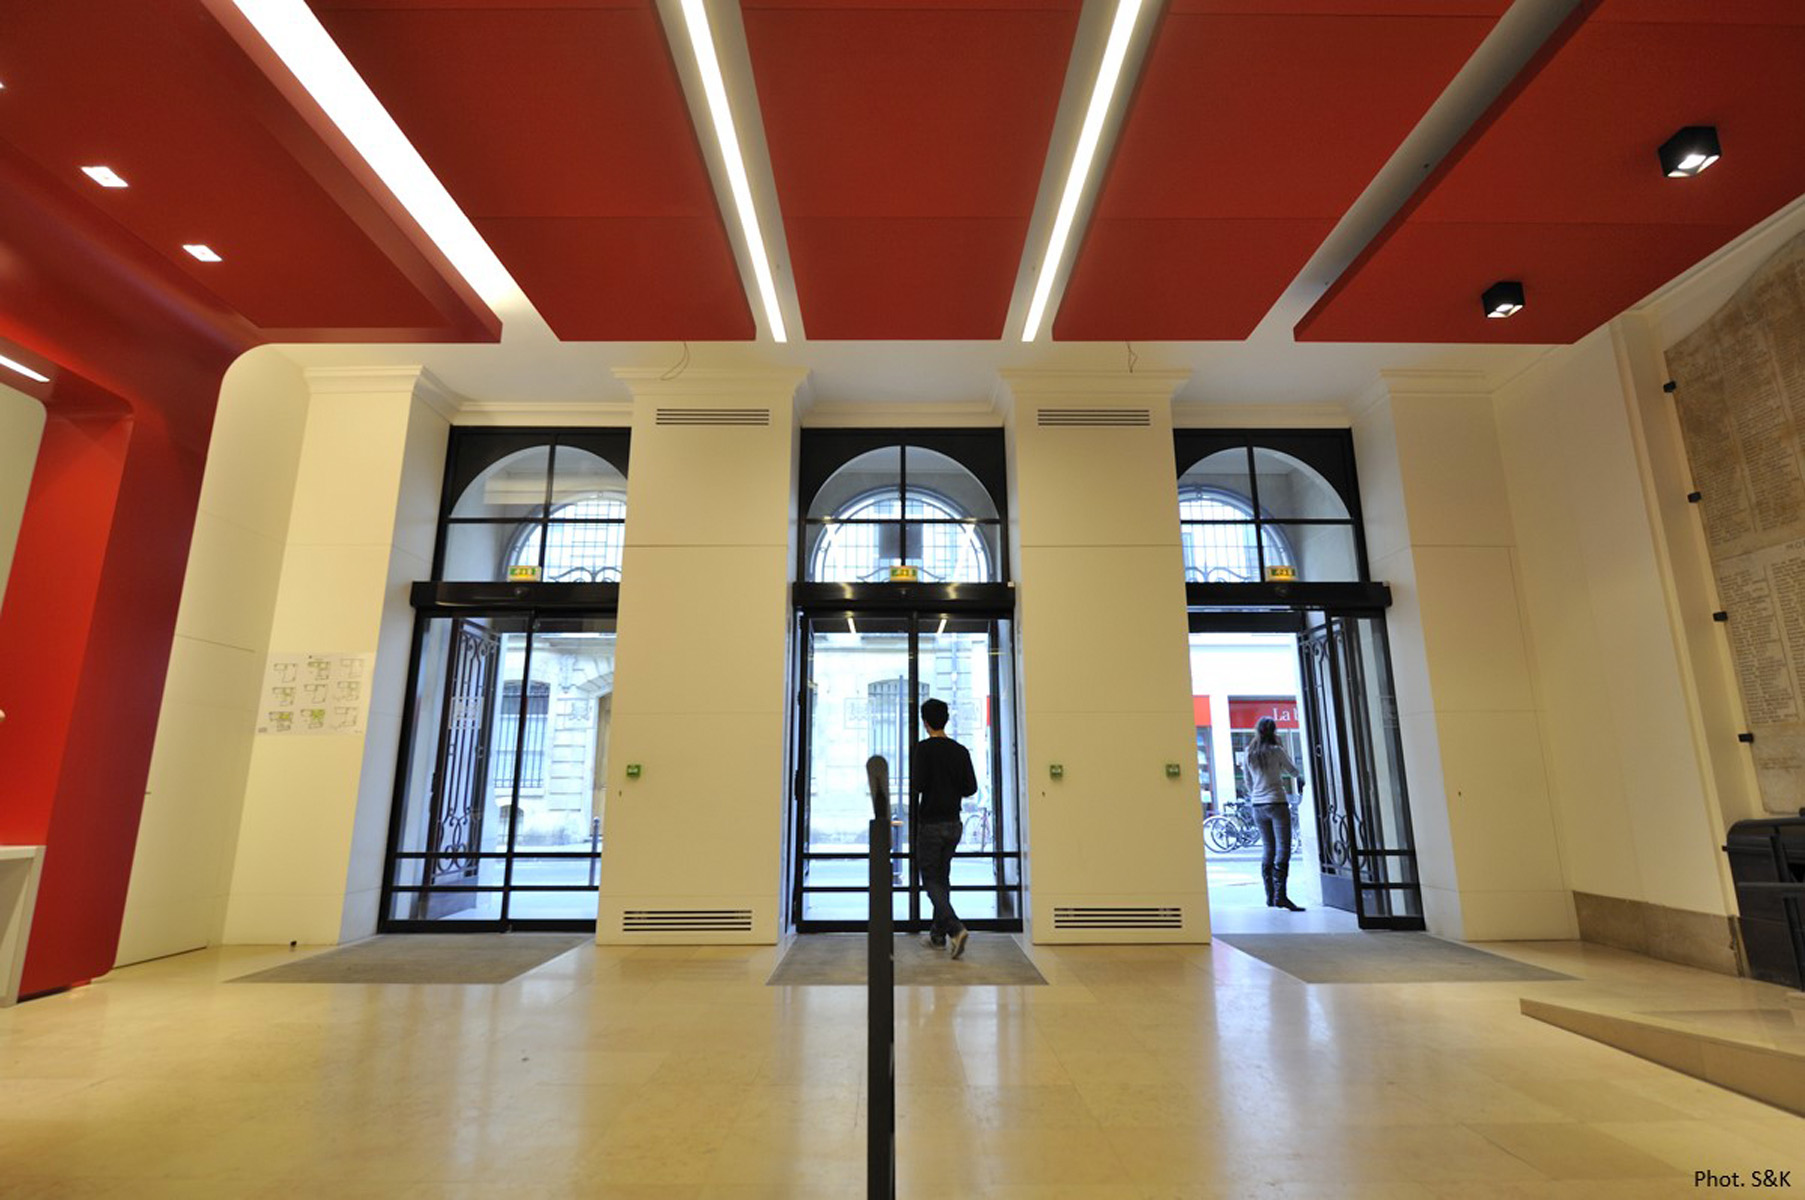 Hall d’accueil Université des Sciences Politiques Paris - Architecture Intérieure et Design - Atelier CM